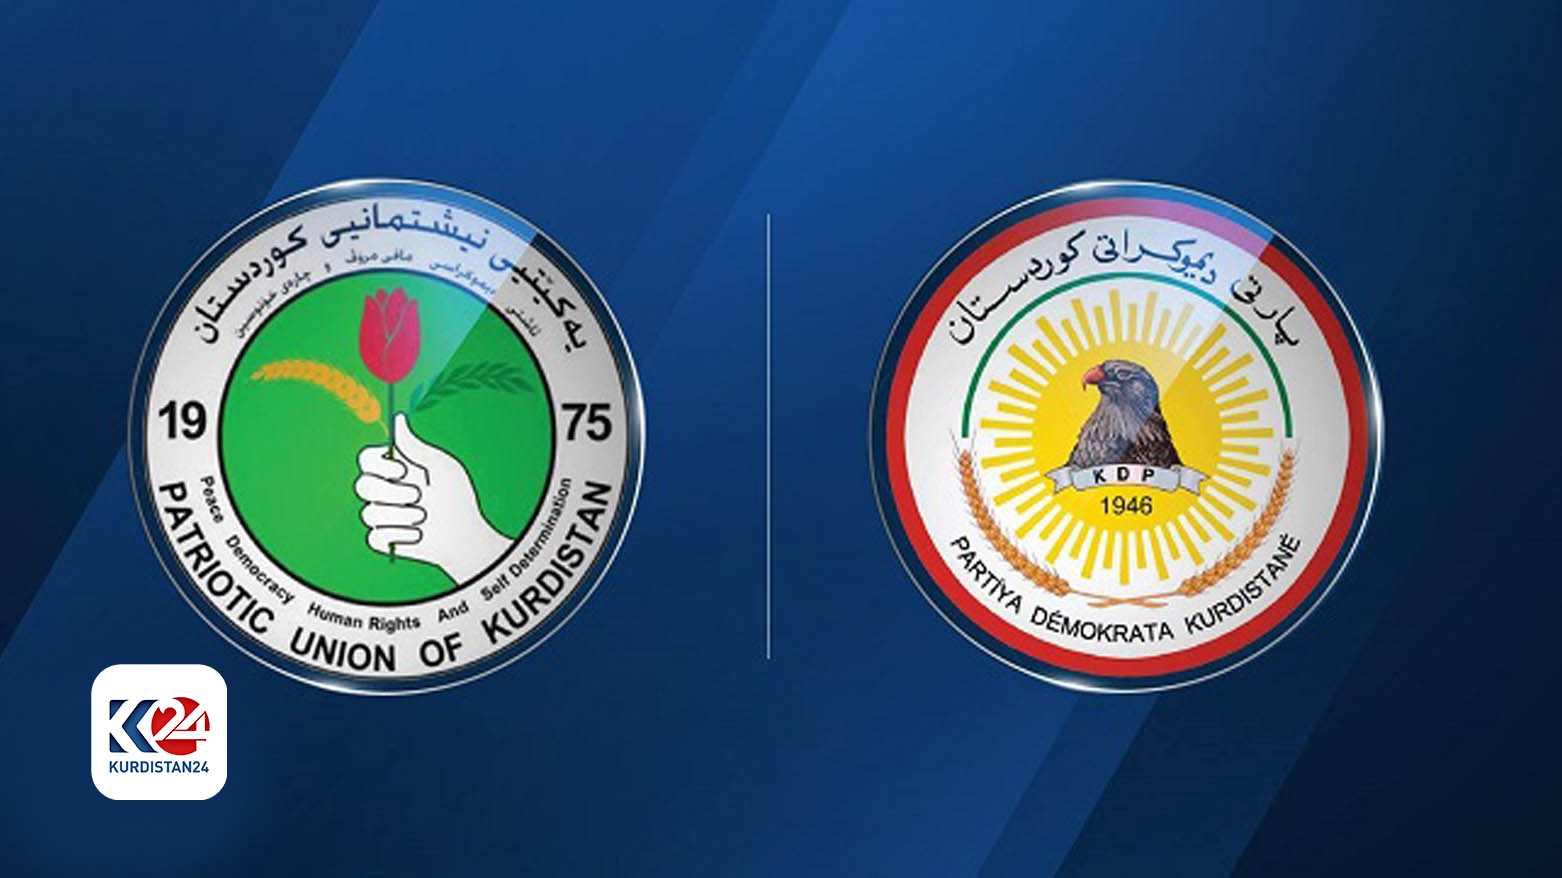 نشان پارت دموکرات کوردستان و نشان اتحادیه میهنی کوردستان